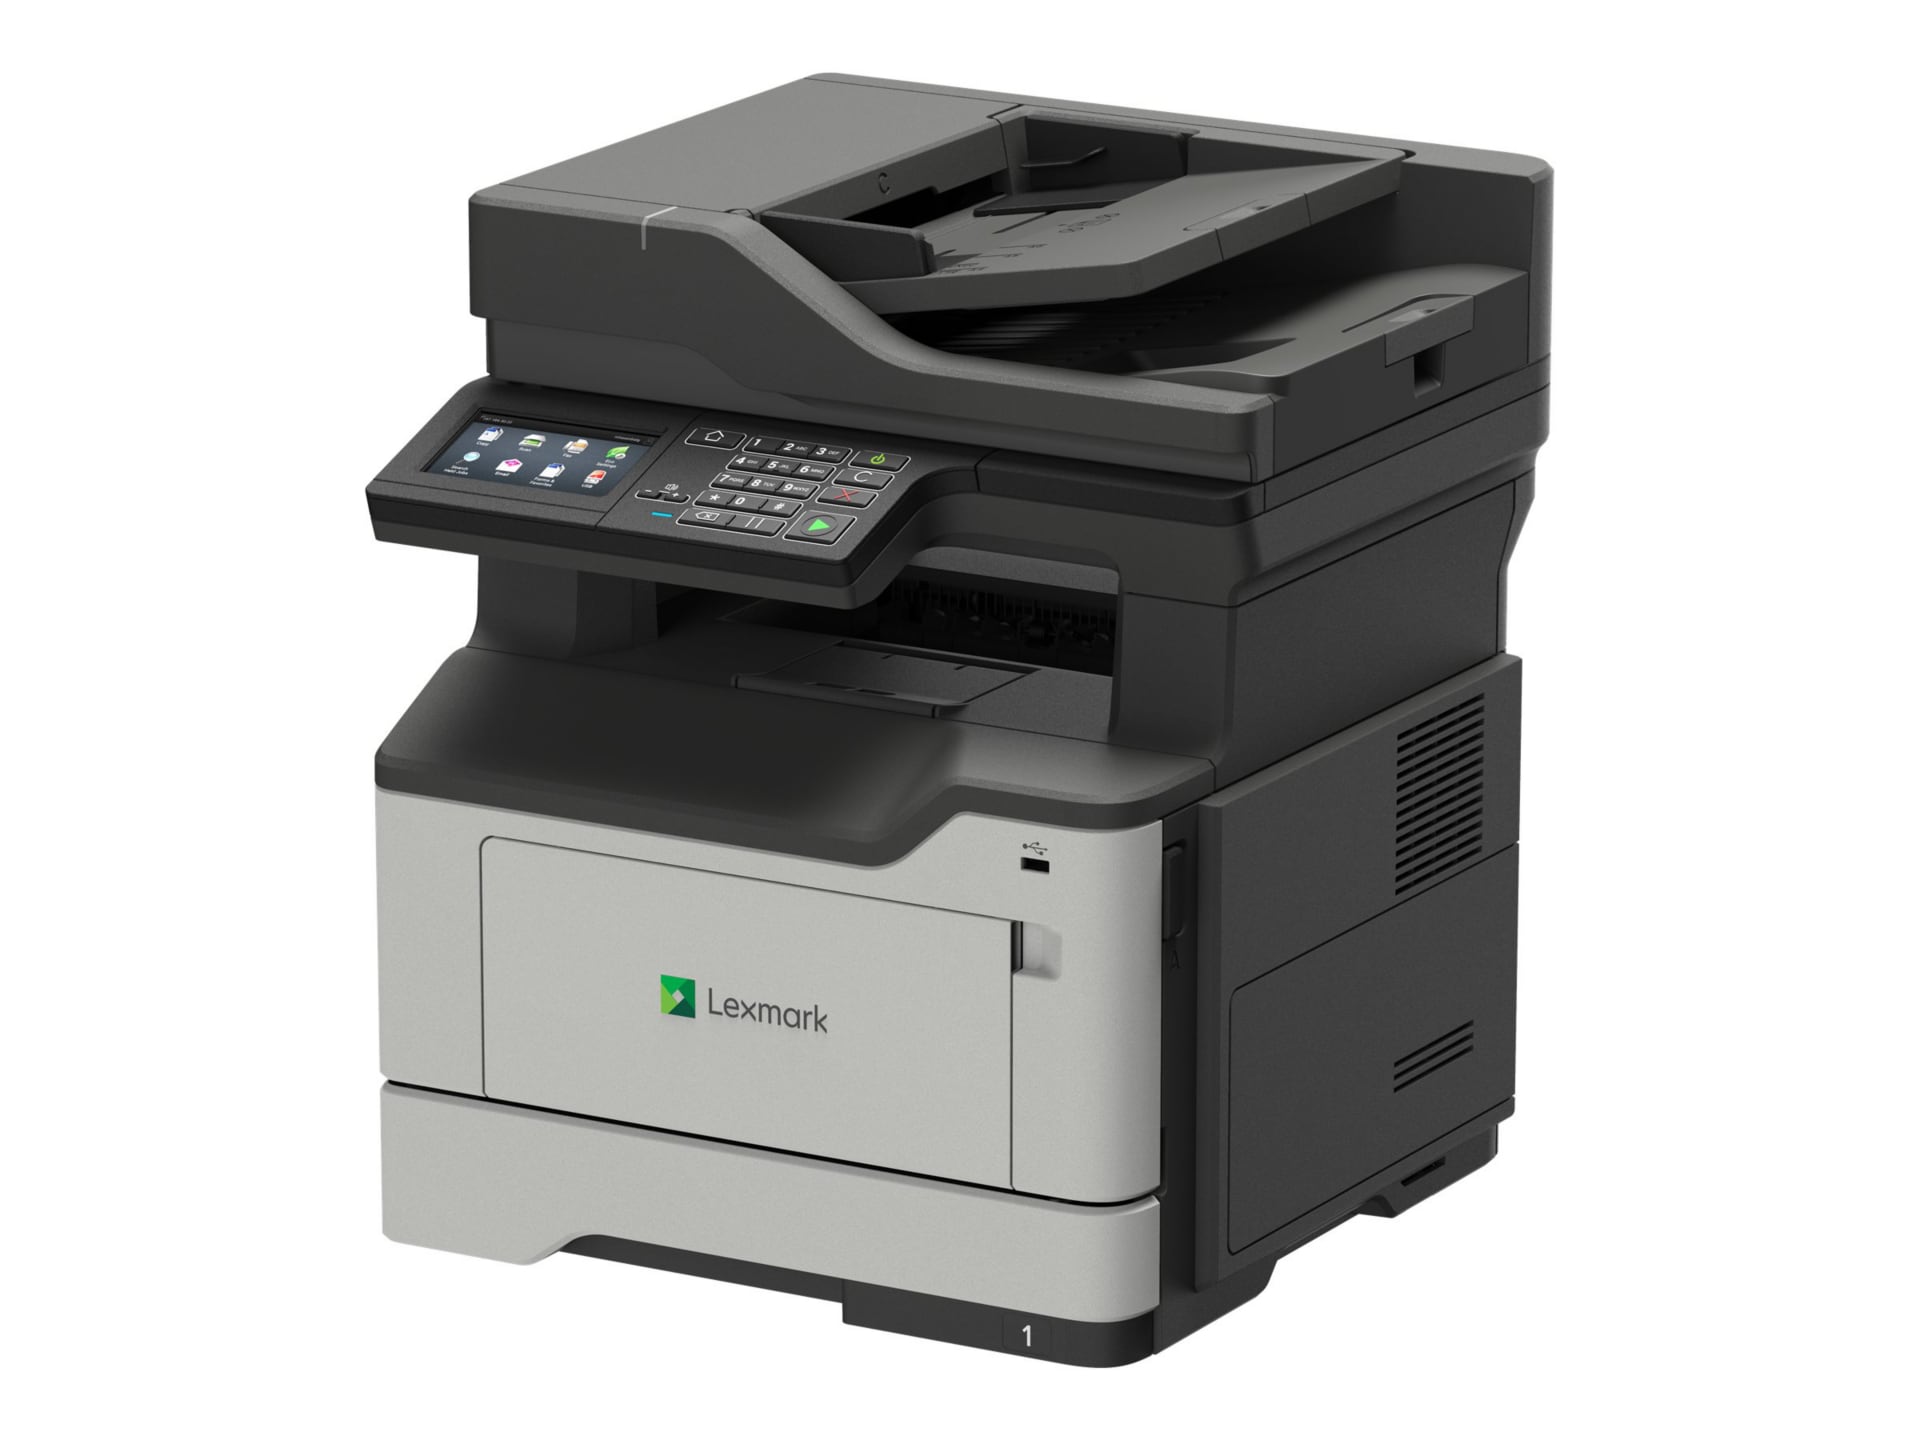 Lexmark MB2442adwe - multifunction printer - B/W